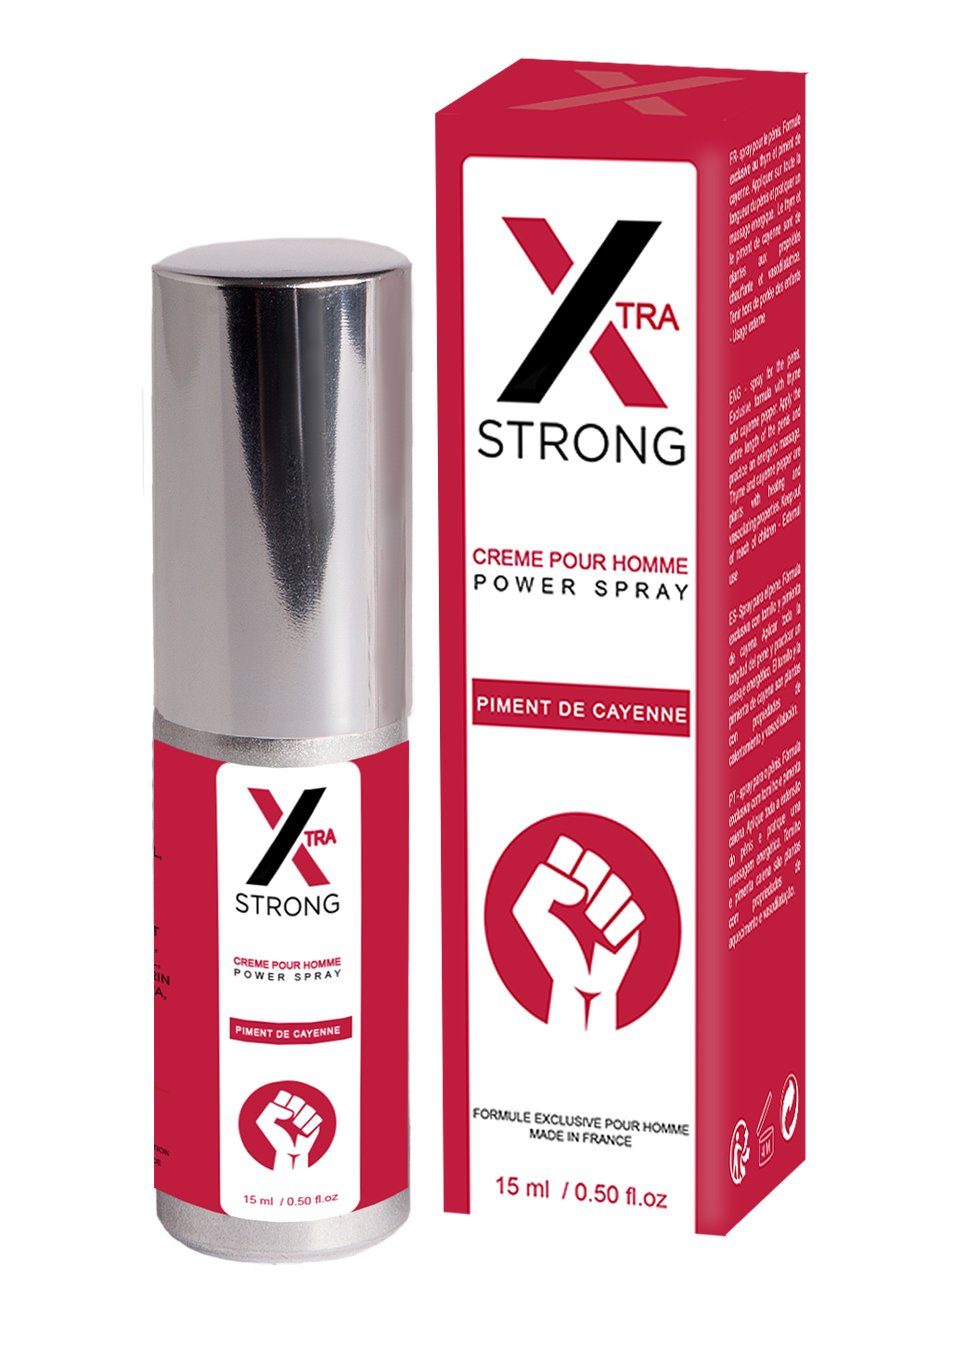 Ruf Stimulationsgel Xtra Strong Erektions-Spray für härtere Erektion